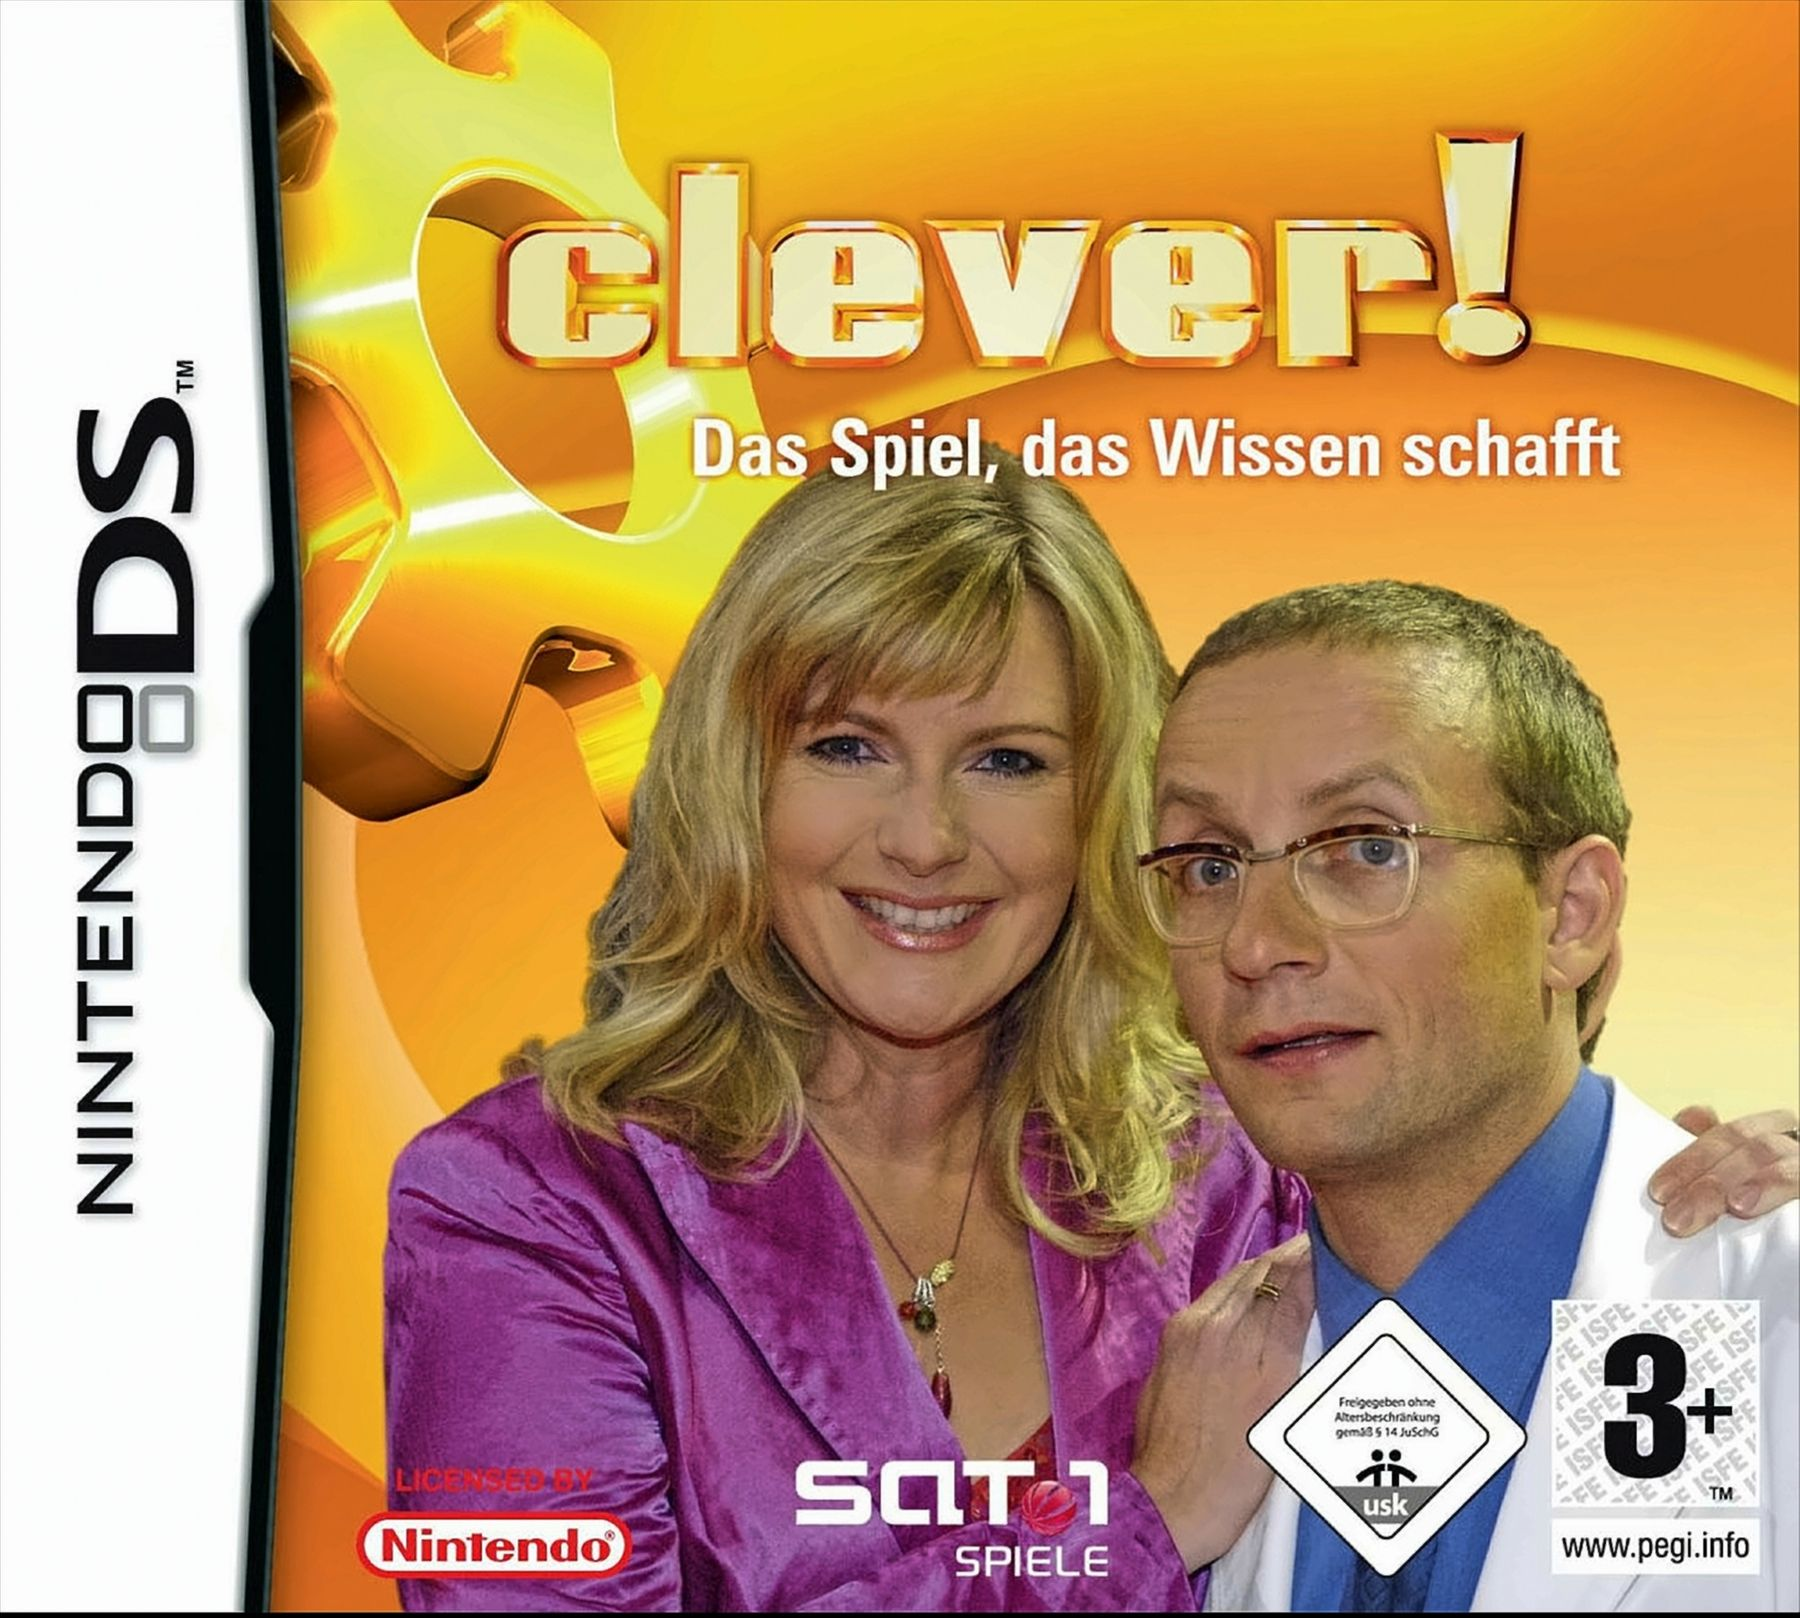 [Nintendo DS] Das schafft Spiel, Wissen Clever! - - das